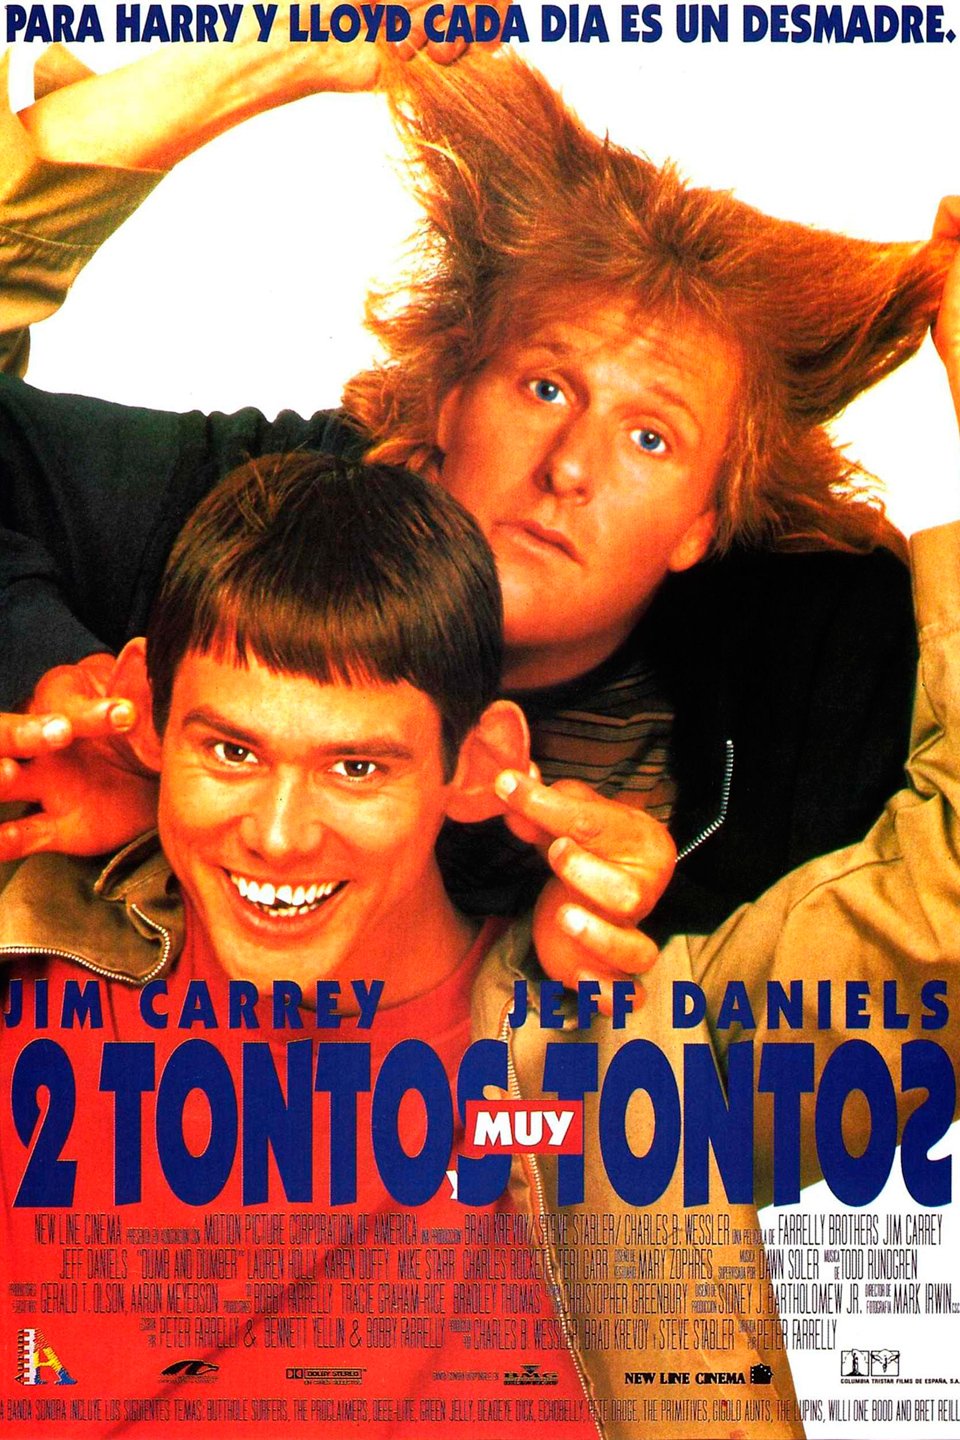 Dos tontos muy tontos - Película 1994 - SensaCine.com - Dos Tontos Aun Mas Tontos Pelicula Completa